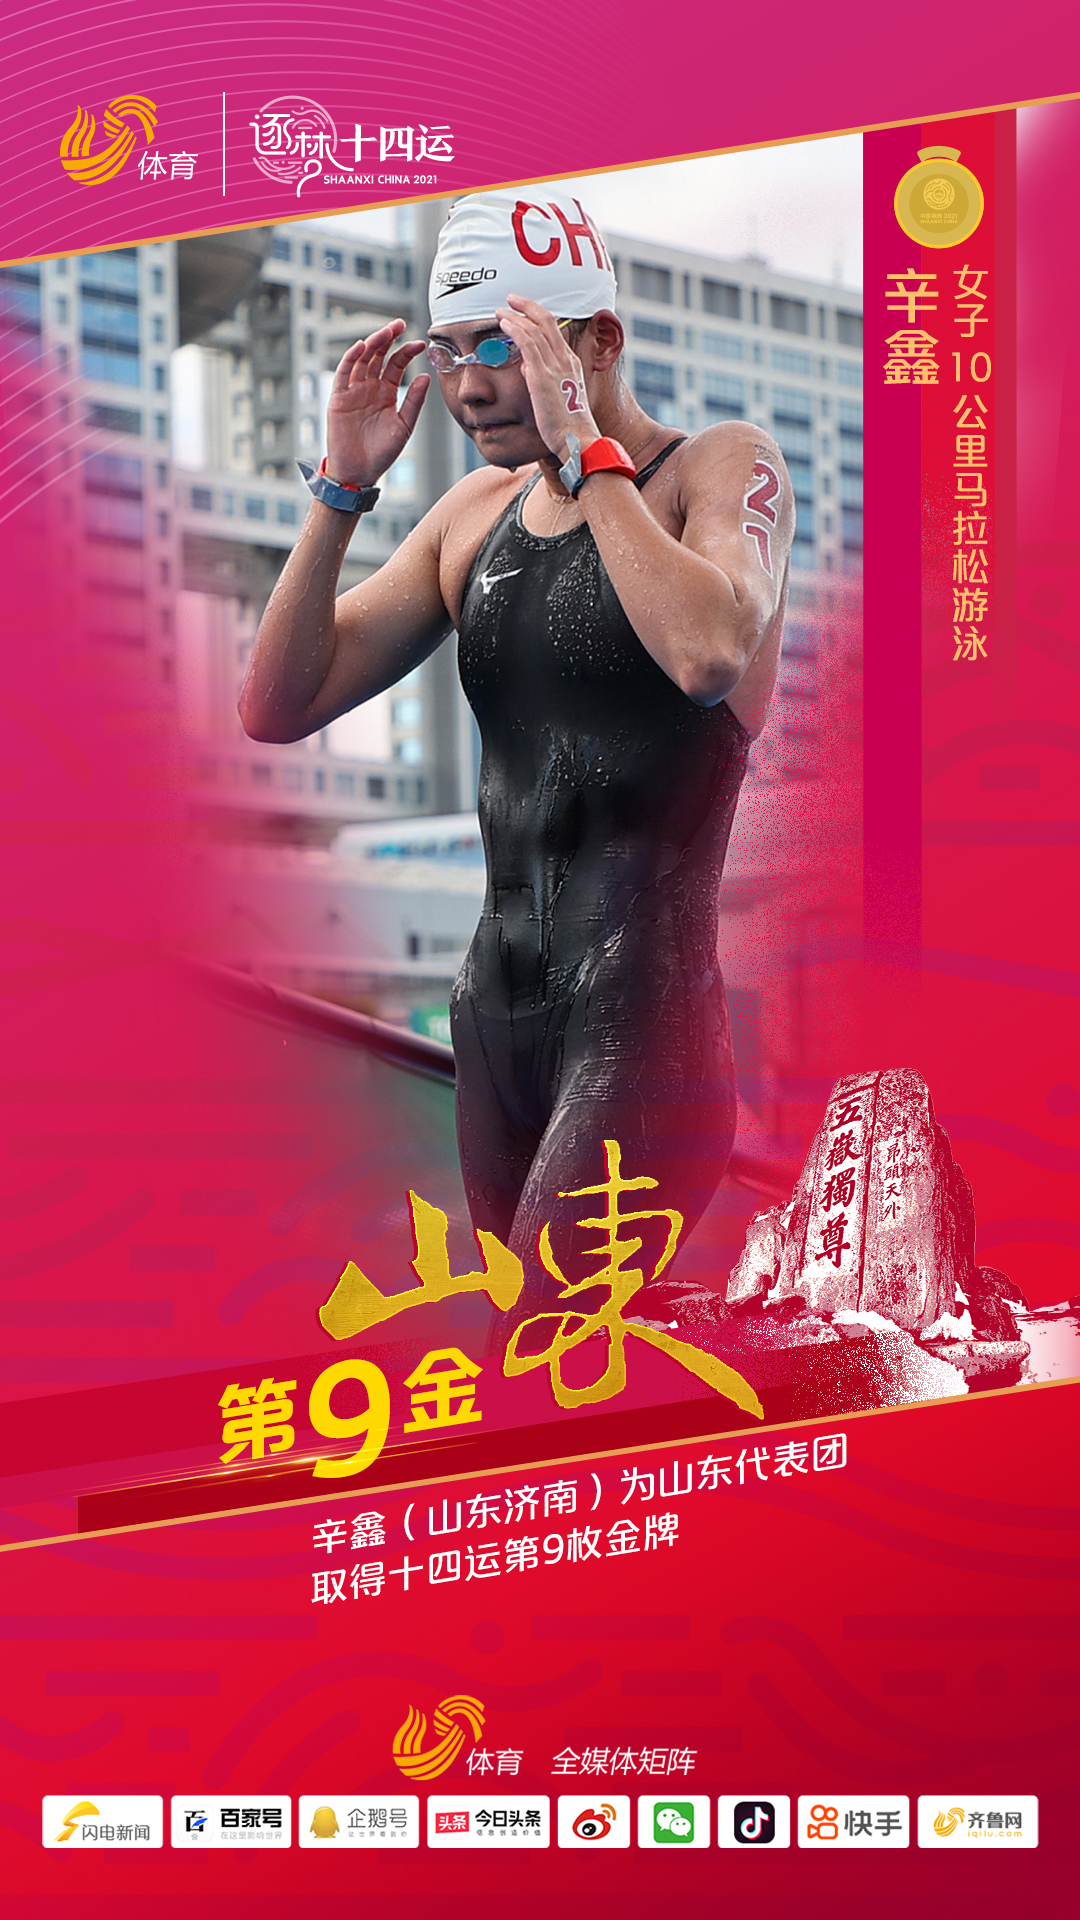 第九金！辛鑫夺得十四运马拉松游泳女子10公里金牌